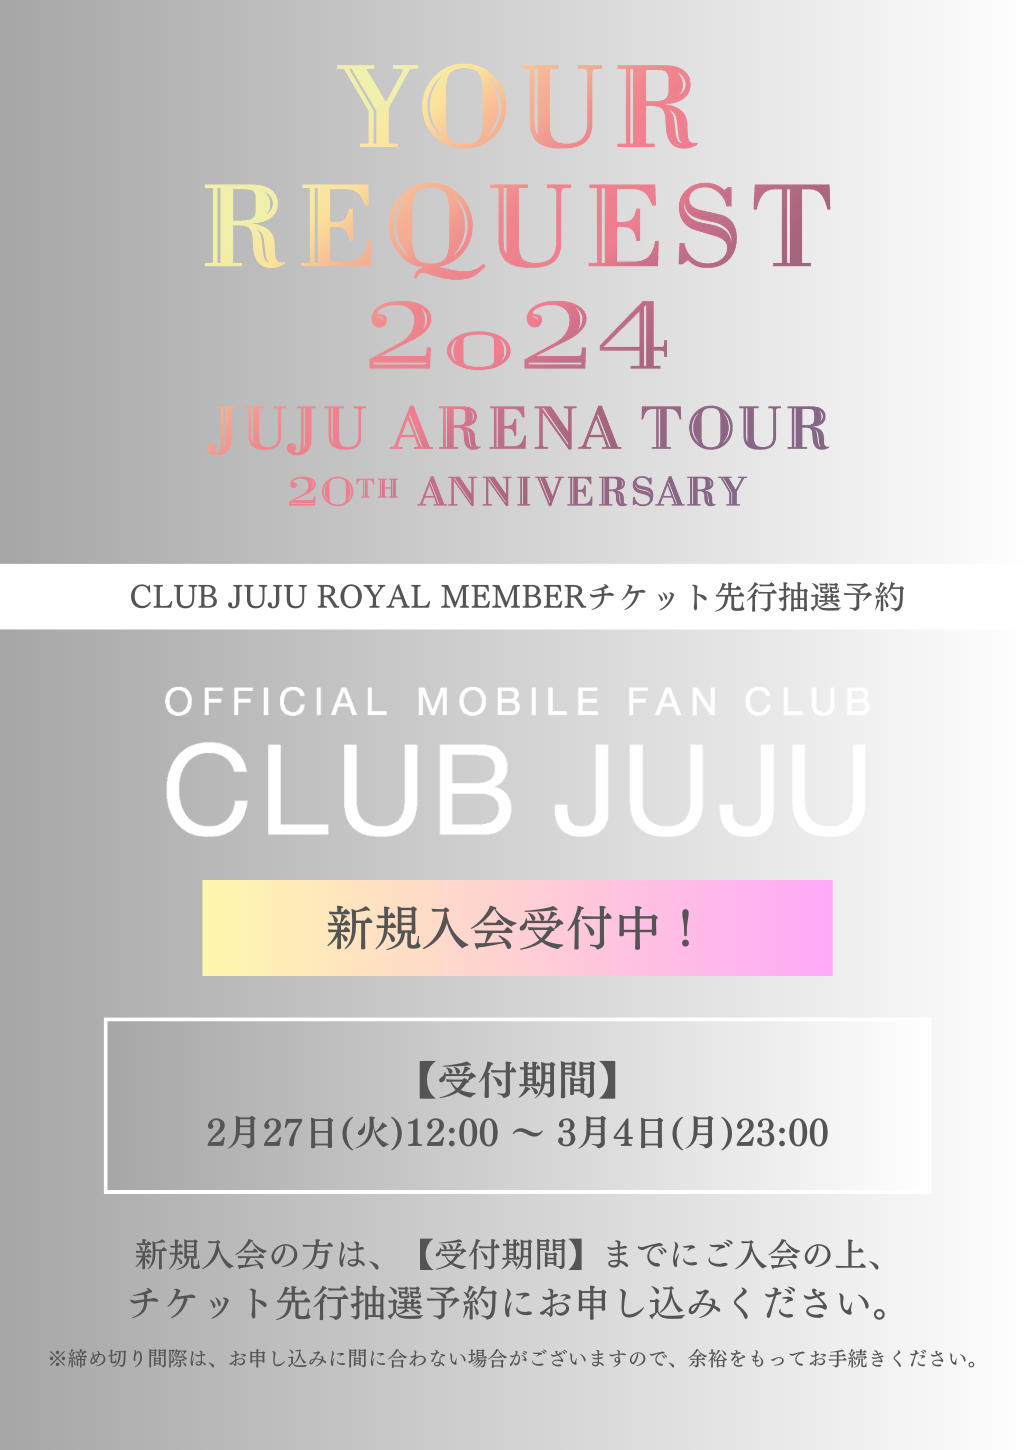 全国アリーナツアー『JUJU 20th ANNIVERSARY ARENA TOUR 2024 「YOUR REQUEST」』CLUB JUJU 最速チケット先行抽選予約：2/27(月)12:00〜3/4(月)23:00